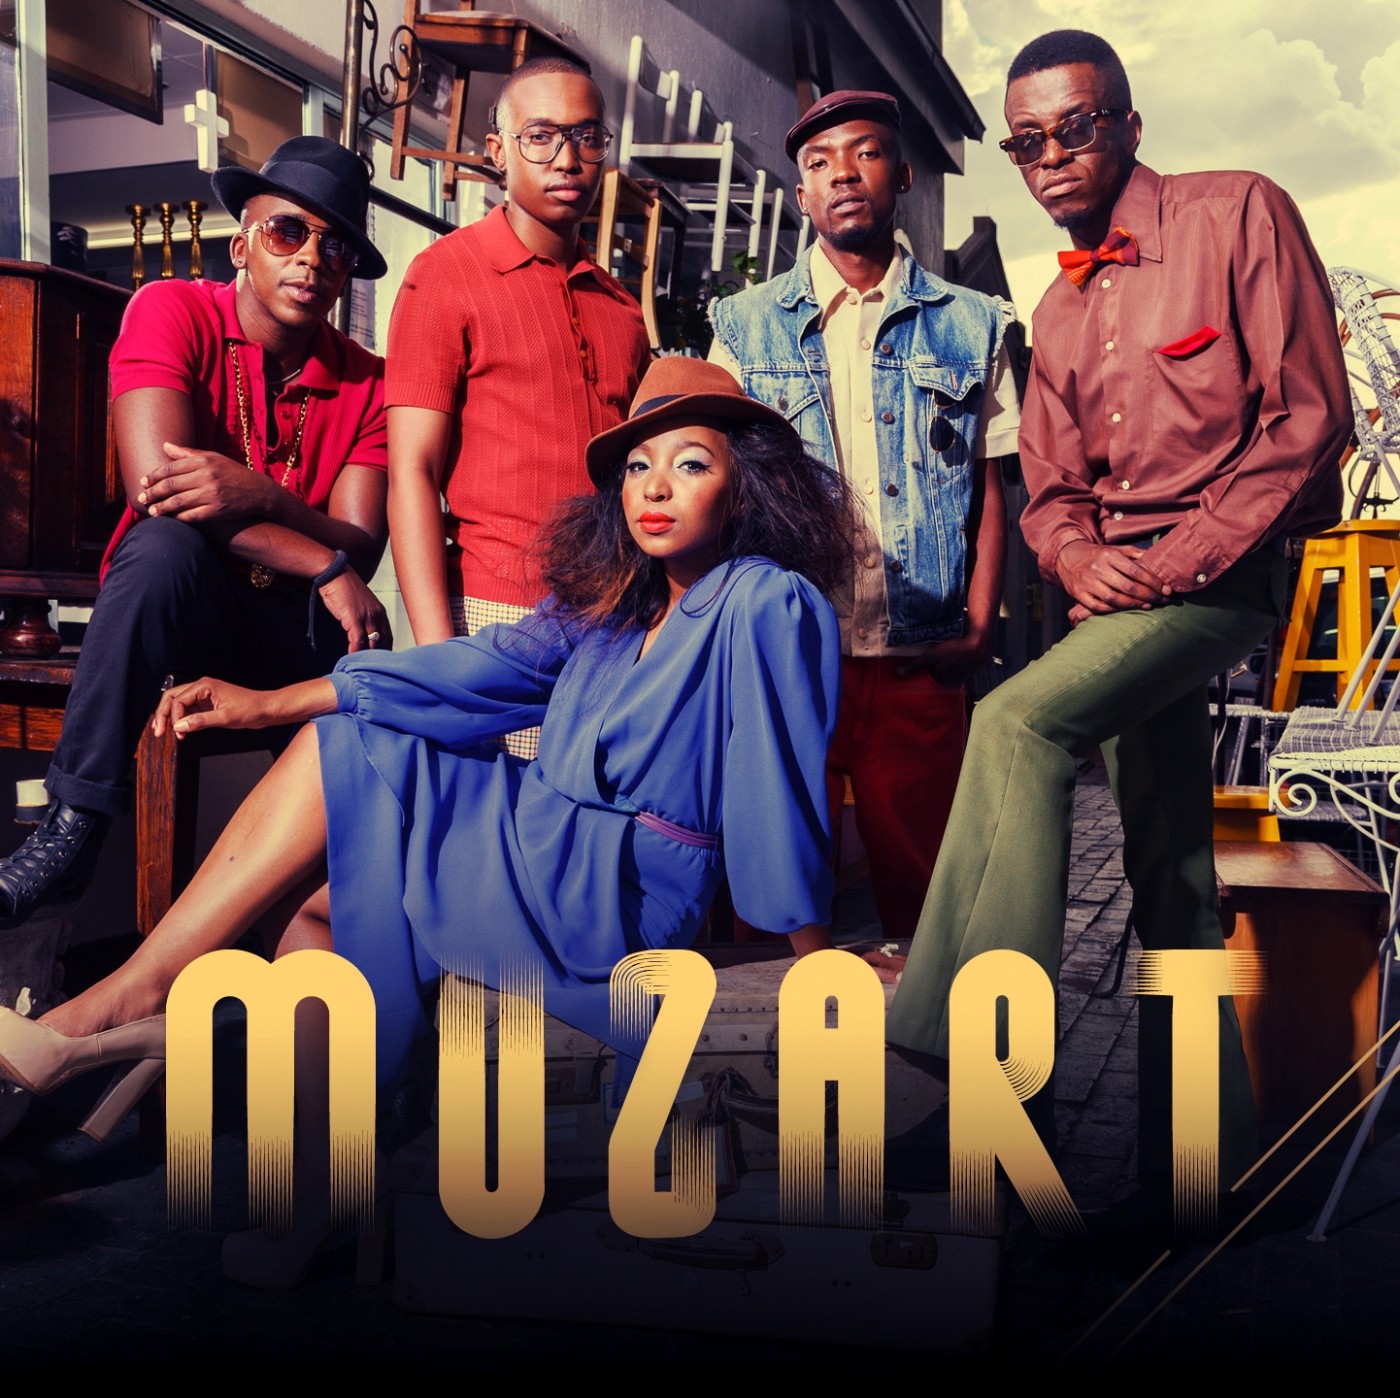 MUZART – Party After Lyrics